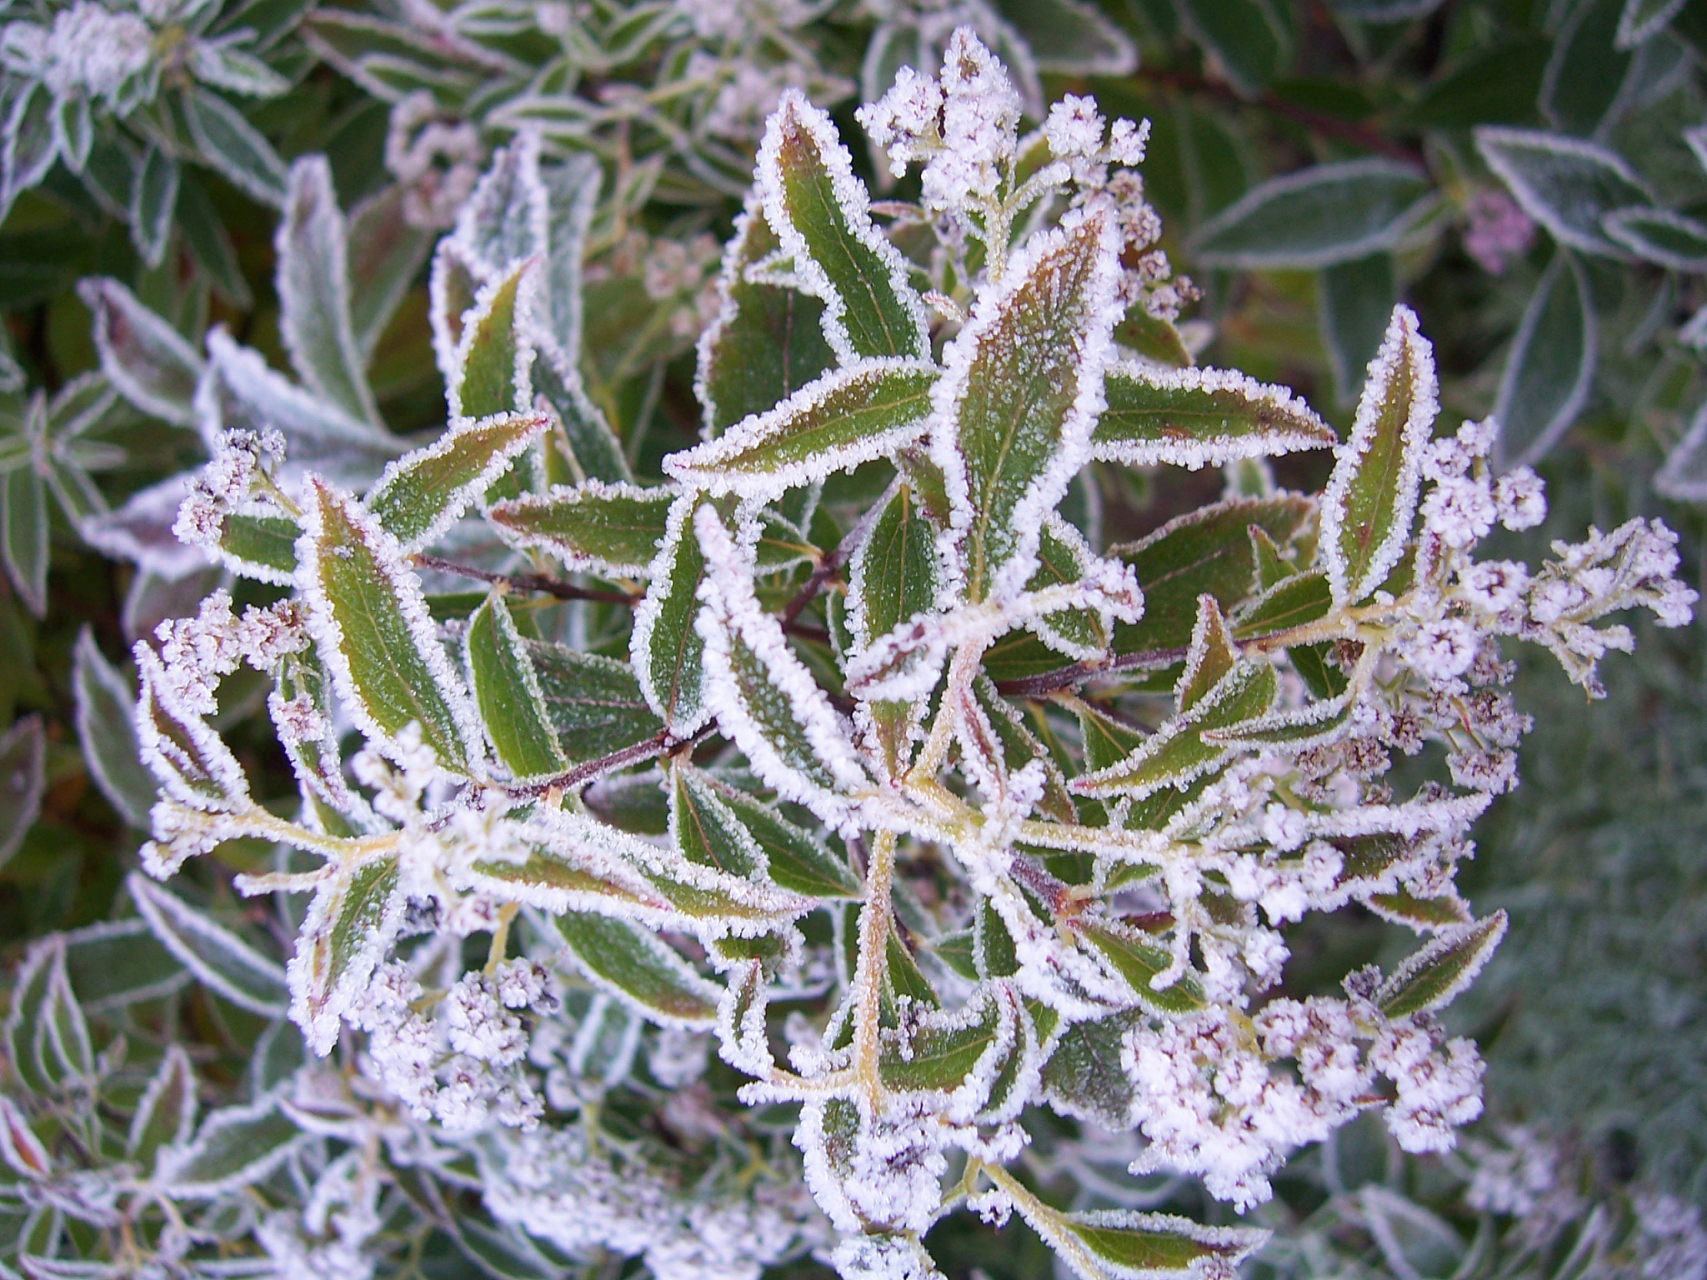 冬天可以存活的植物  在冬季,大部分植物都会进入休眠期,但是仍有一些